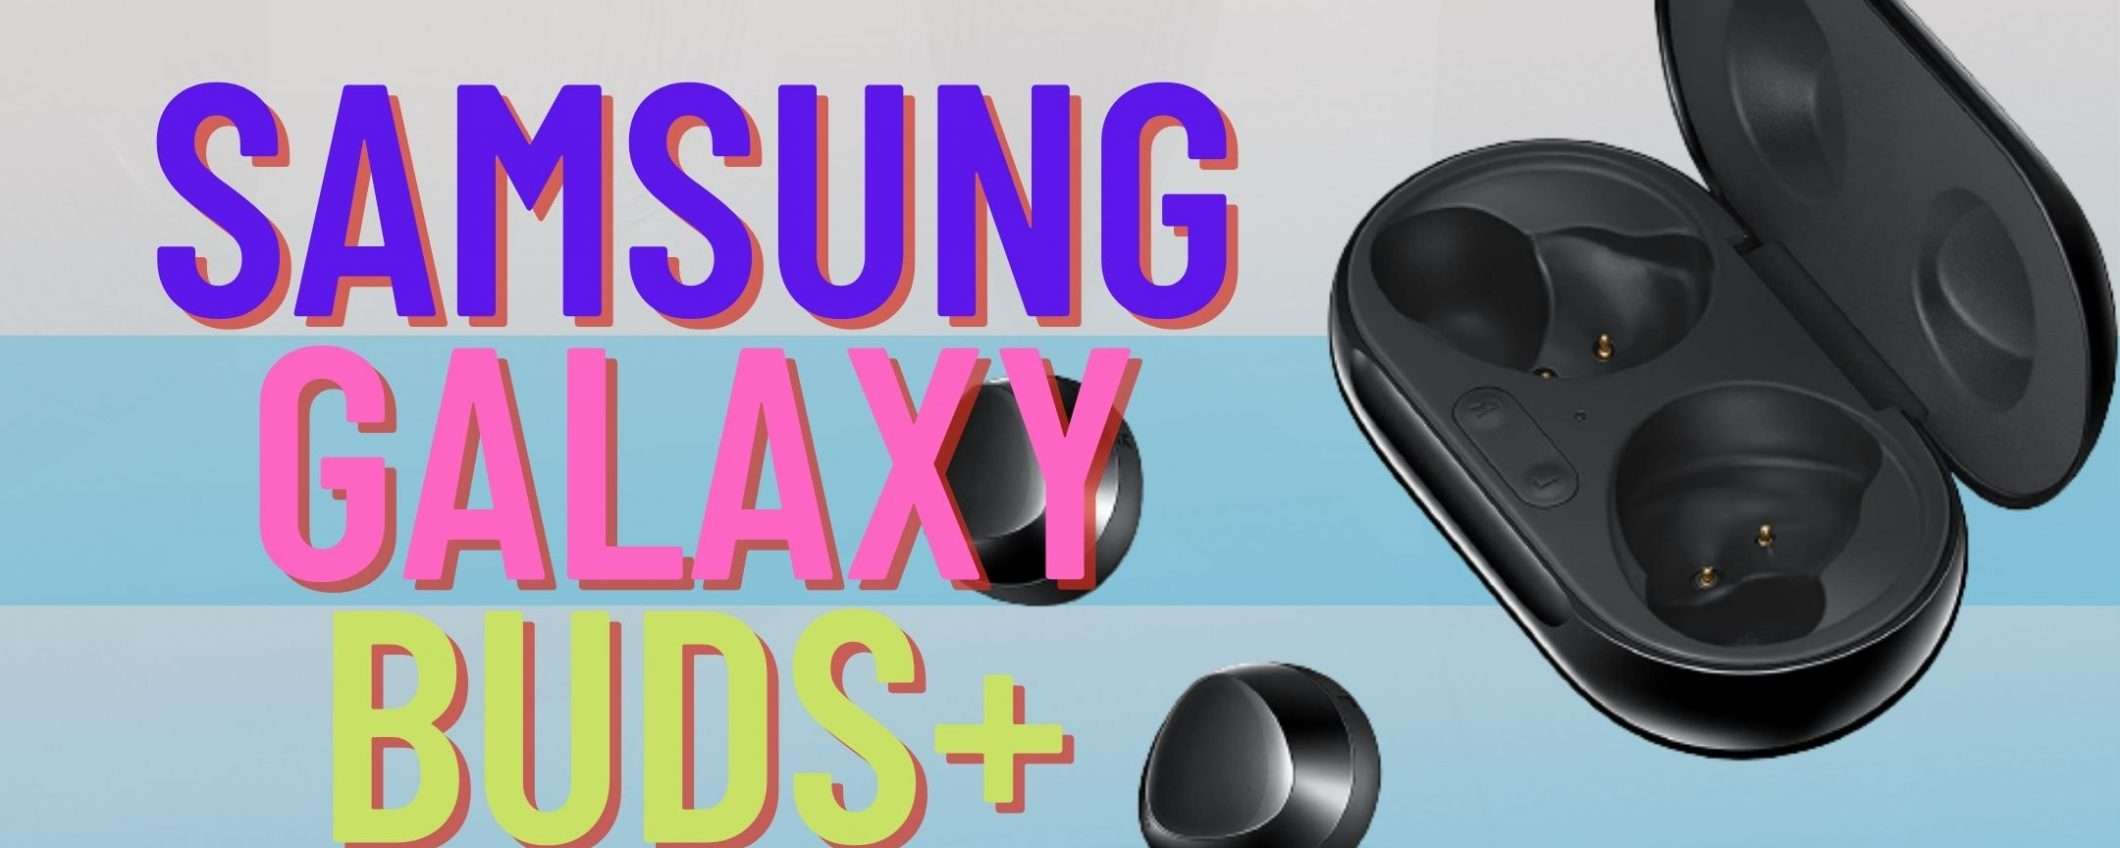 Samsung Galaxy Buds+ sono le padrone del Prime DAY (-70€)